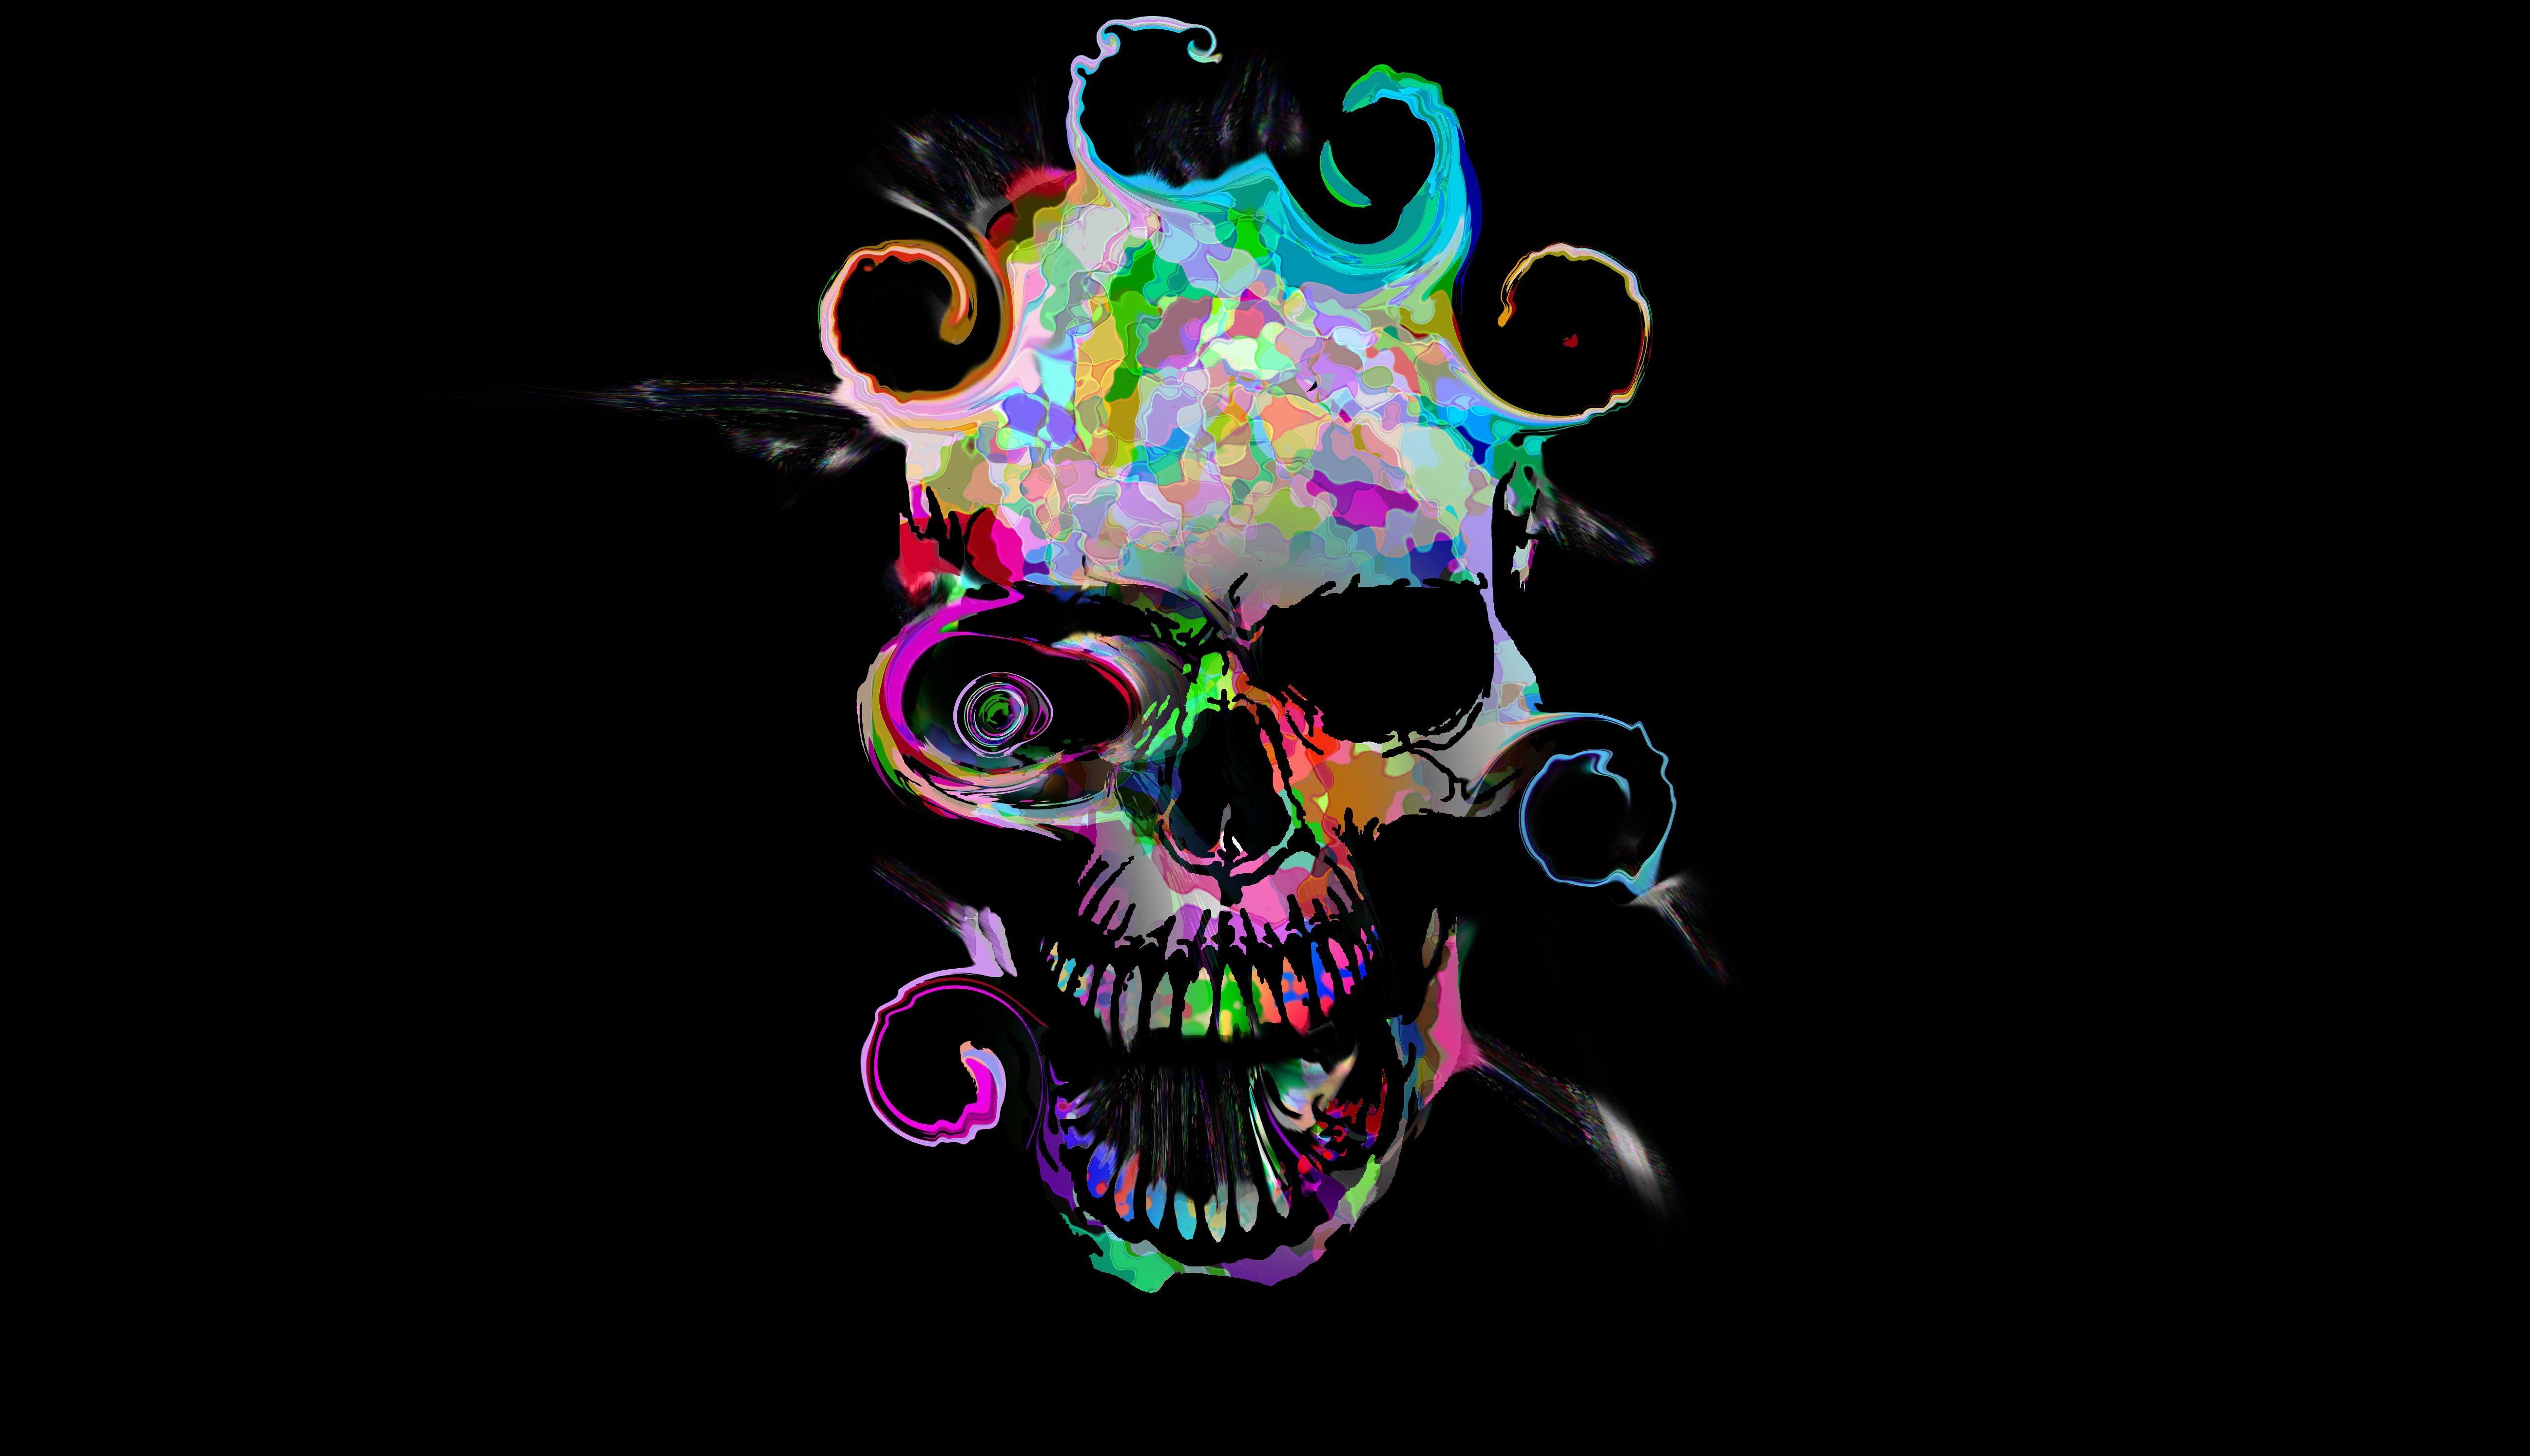 Abstract Skull Art Dark